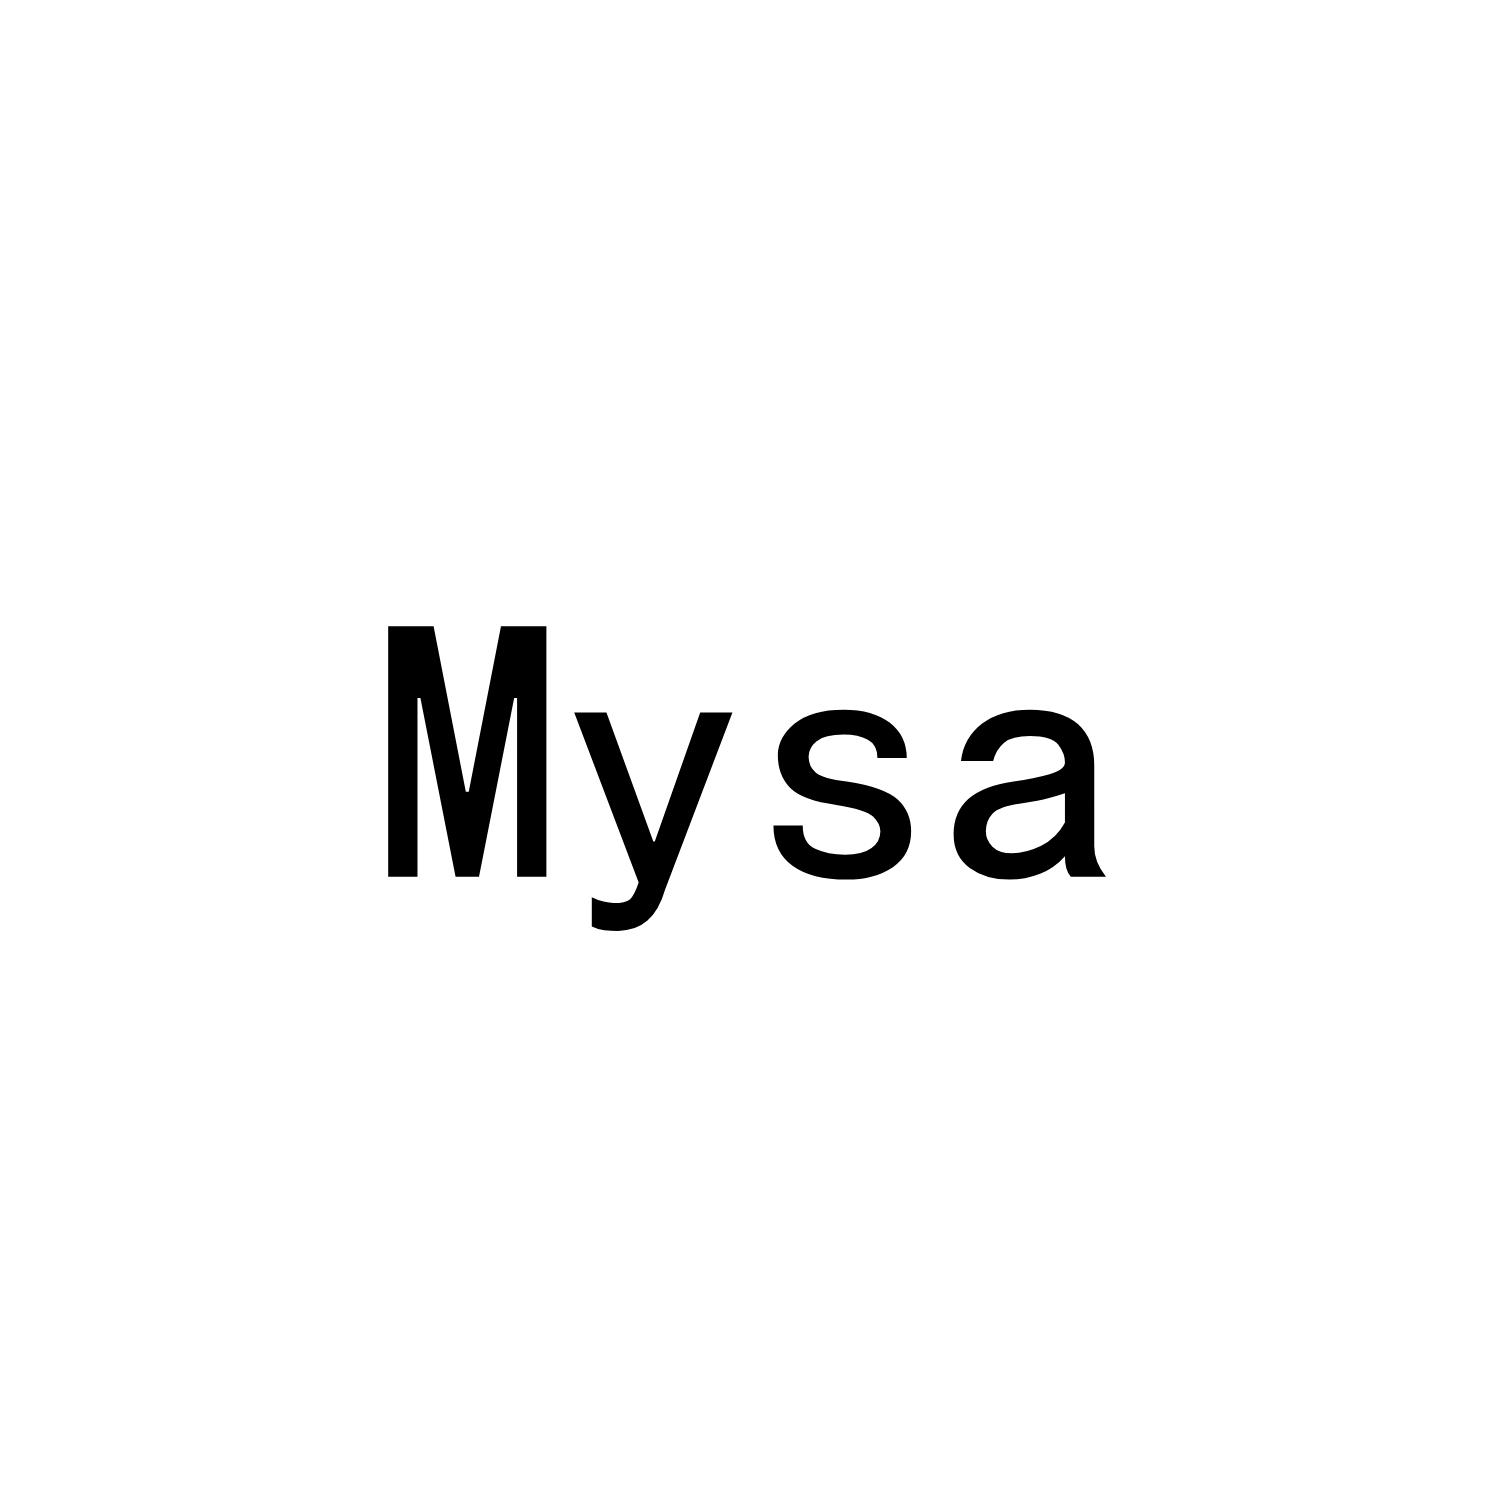 MYSA